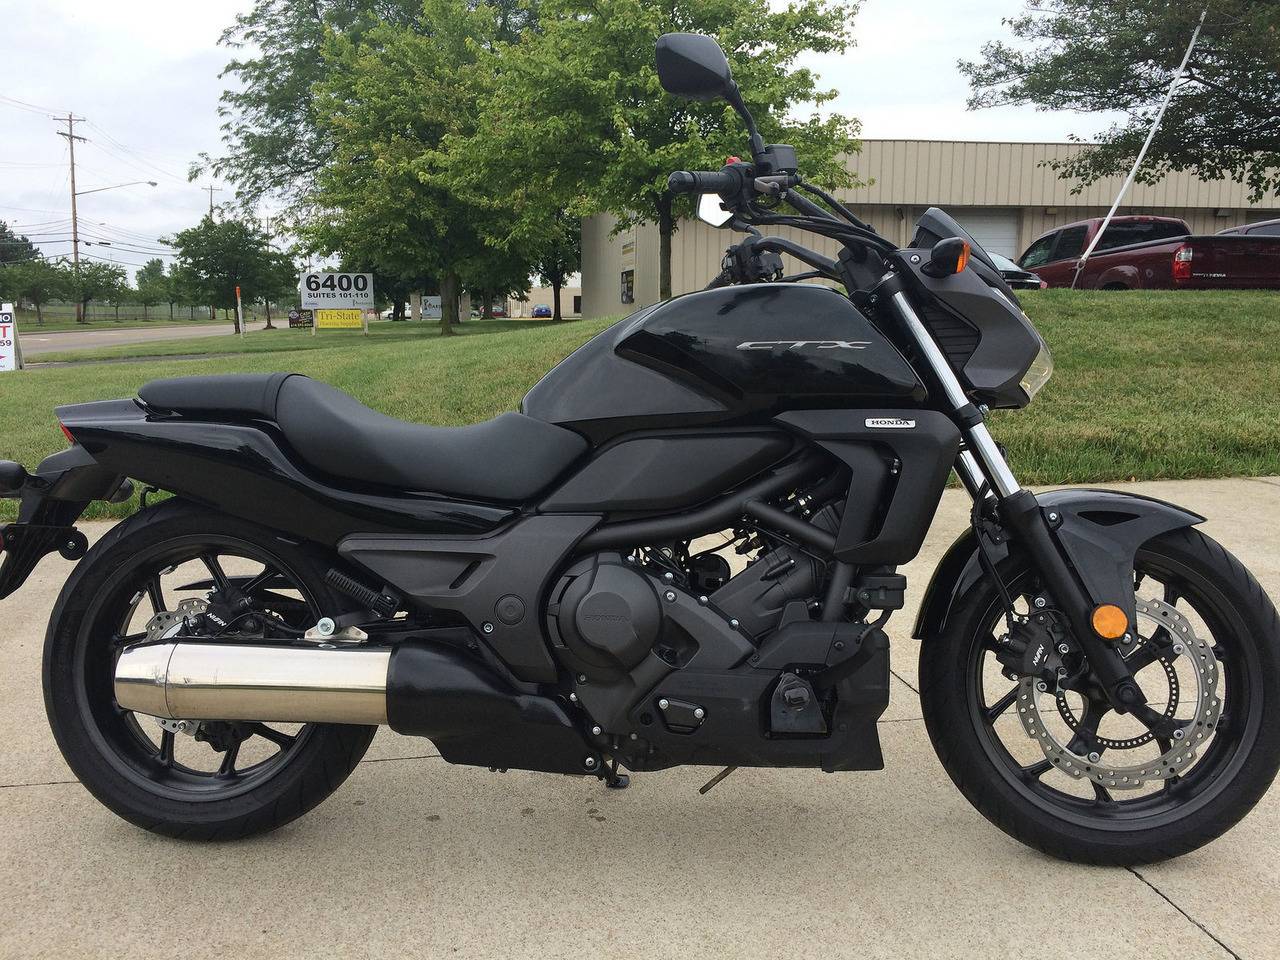 Экспресс-тест: honda integra 700 c-abs – мотоцикл в обличье максискутера